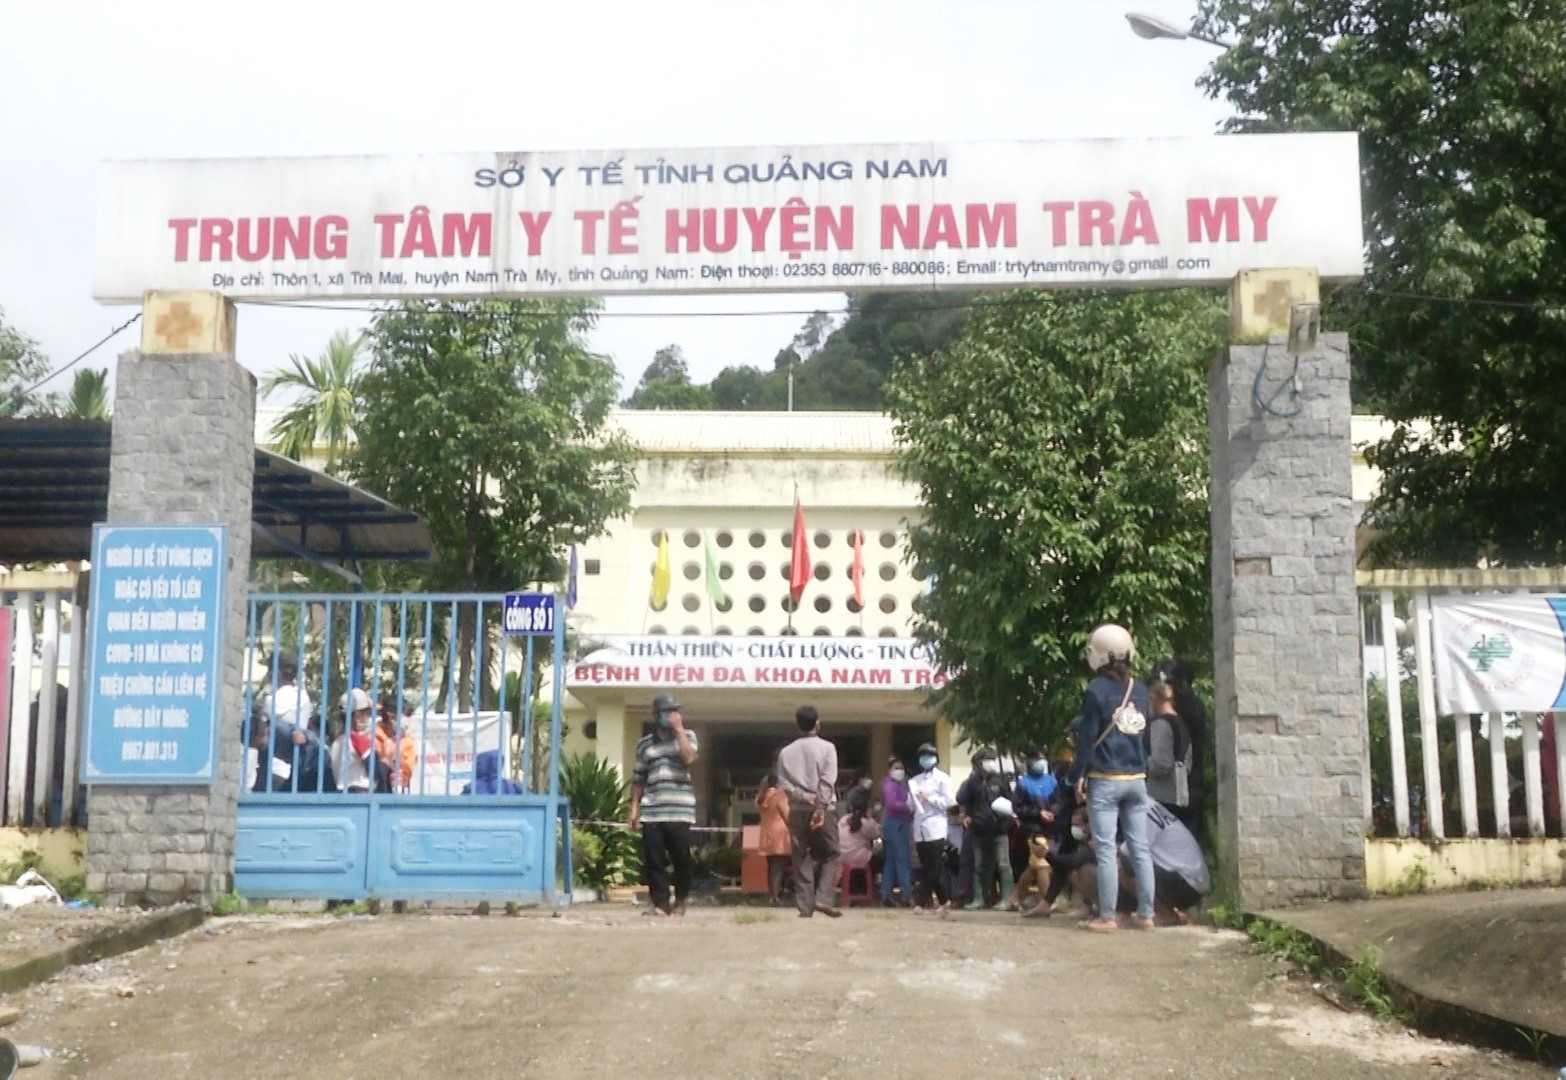 TTYT huyện Nam Trà My rất cần bổ sung nhân lực để khám chữa bệnh cho người dân.